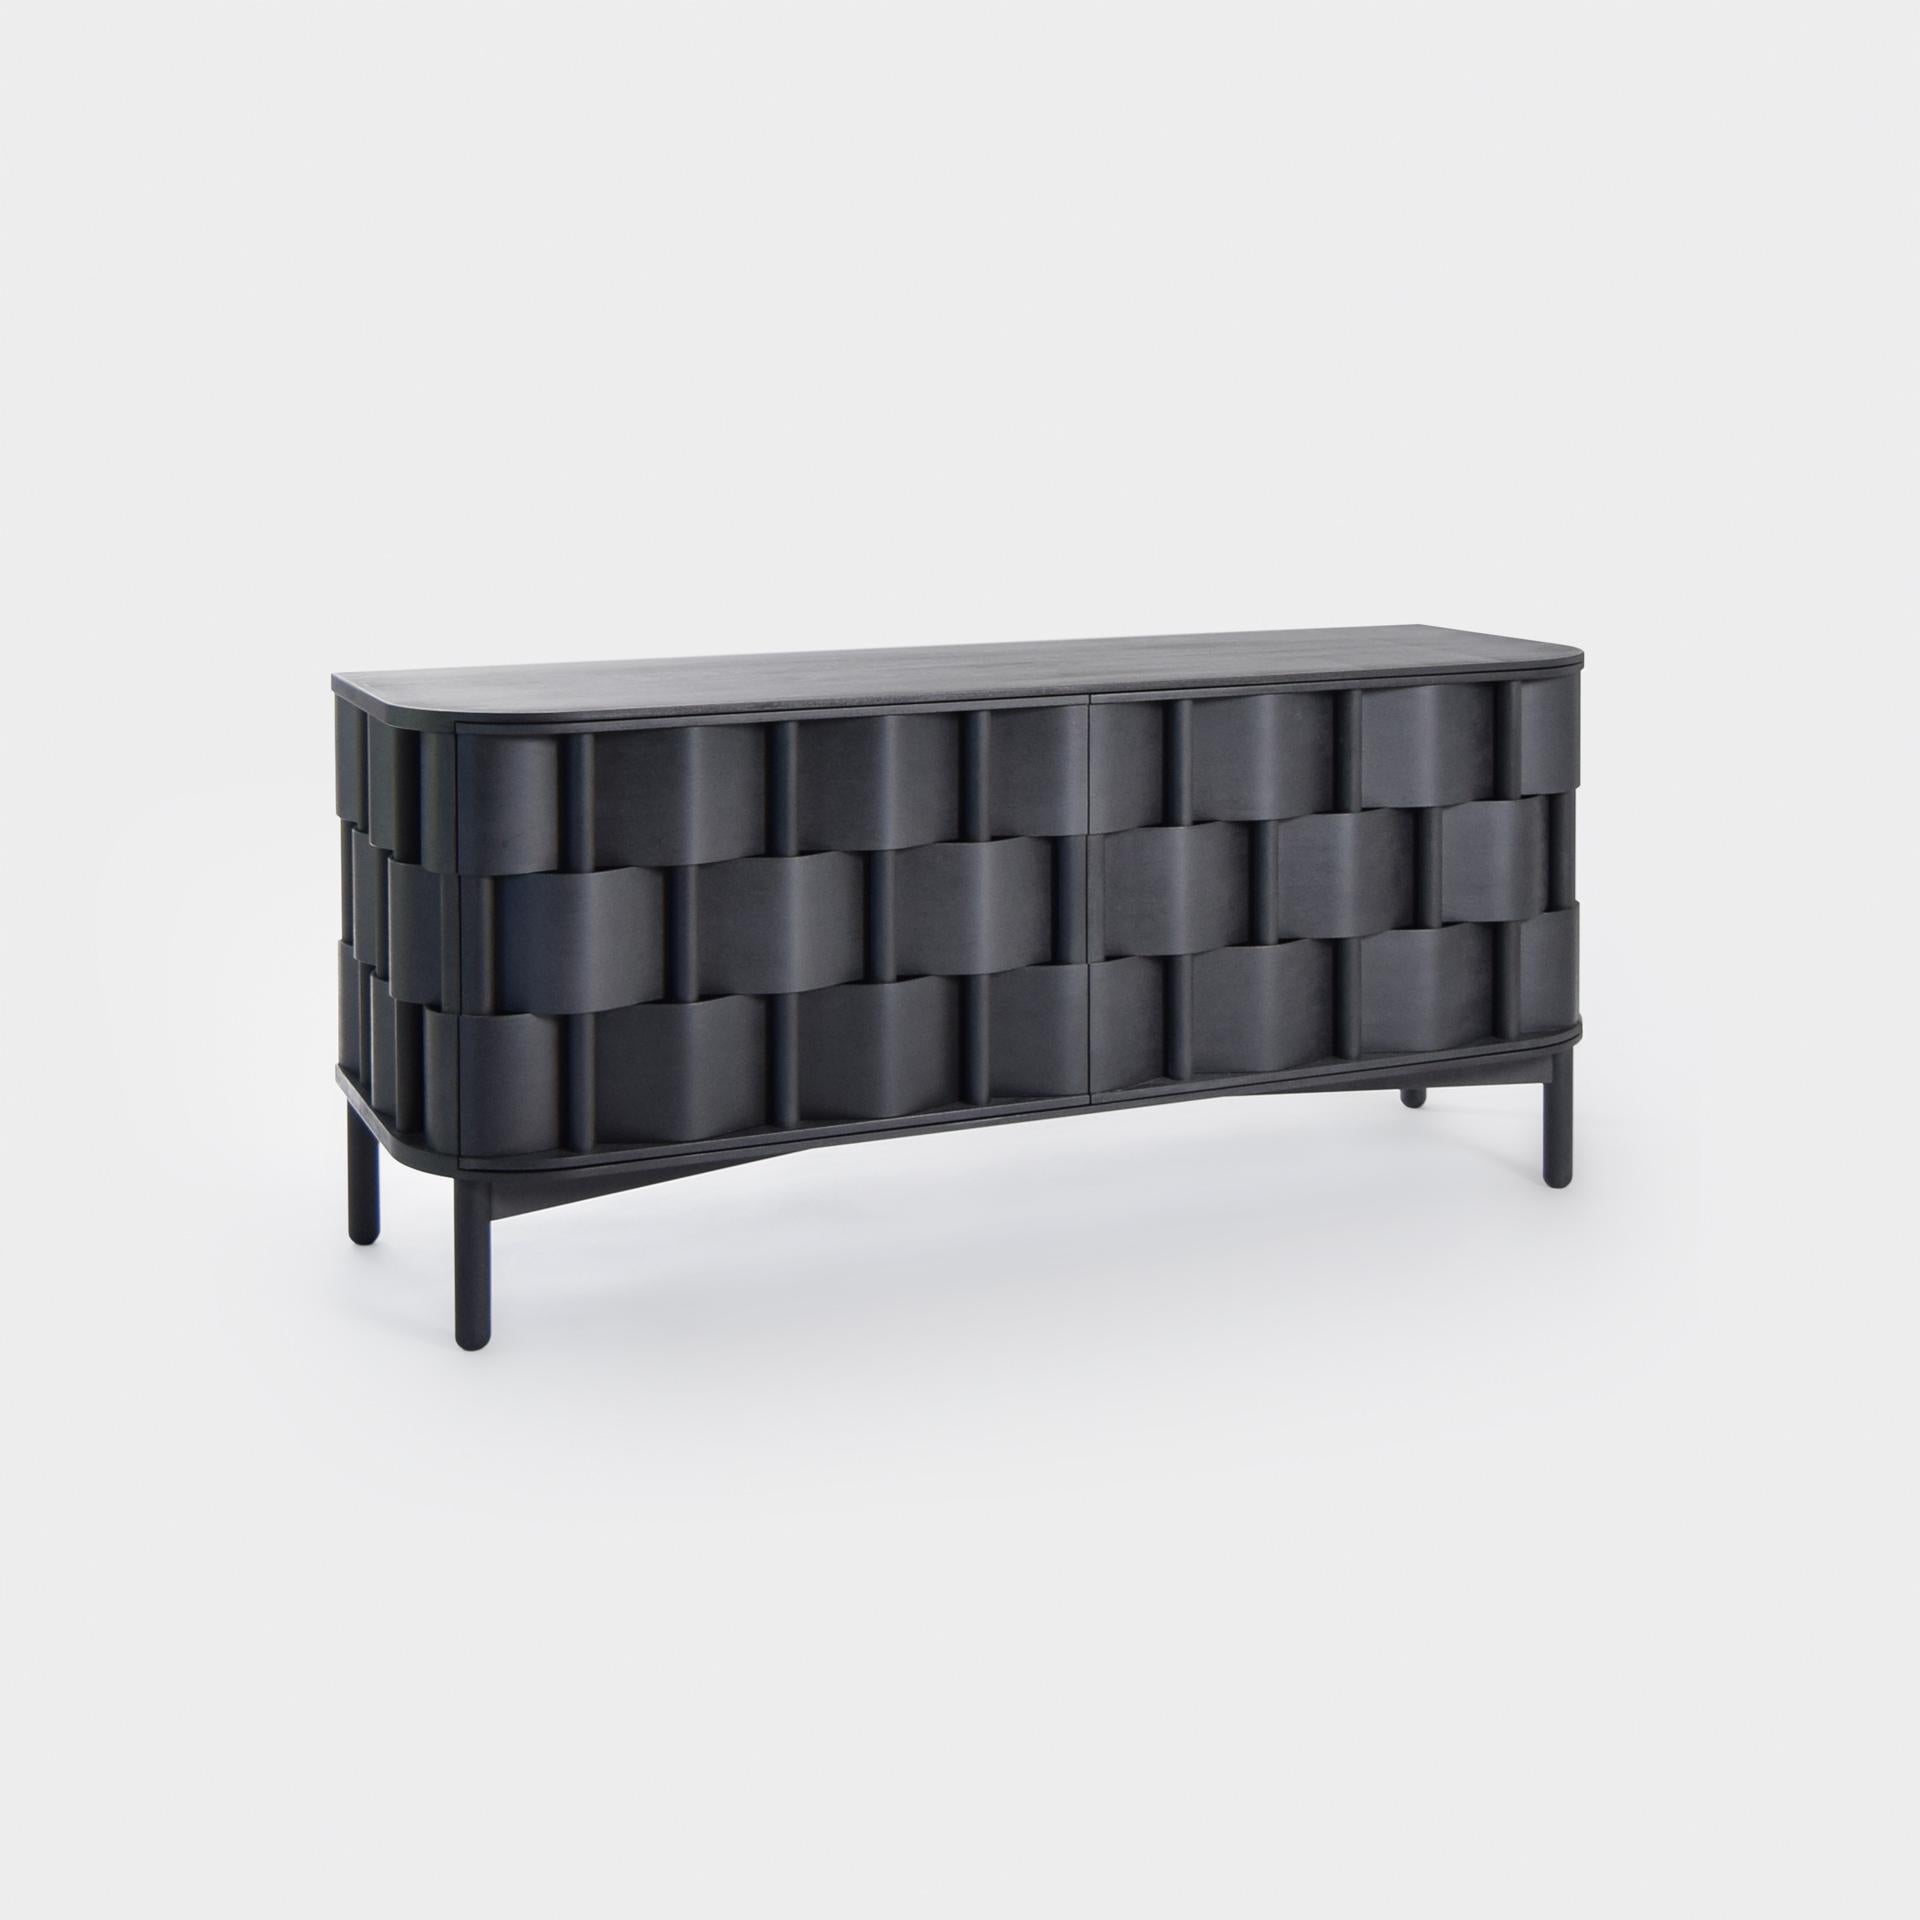 Tissage W133-Noir
Buffet noir, fabriqué en bois de bouleau massif et laminé birchveneér. Moderne mais classique, audacieux mais modeste, ce meuble est un excellent exemple de design contemporain scandinave. Conçu par Lukas Dahlén.

Le buffet